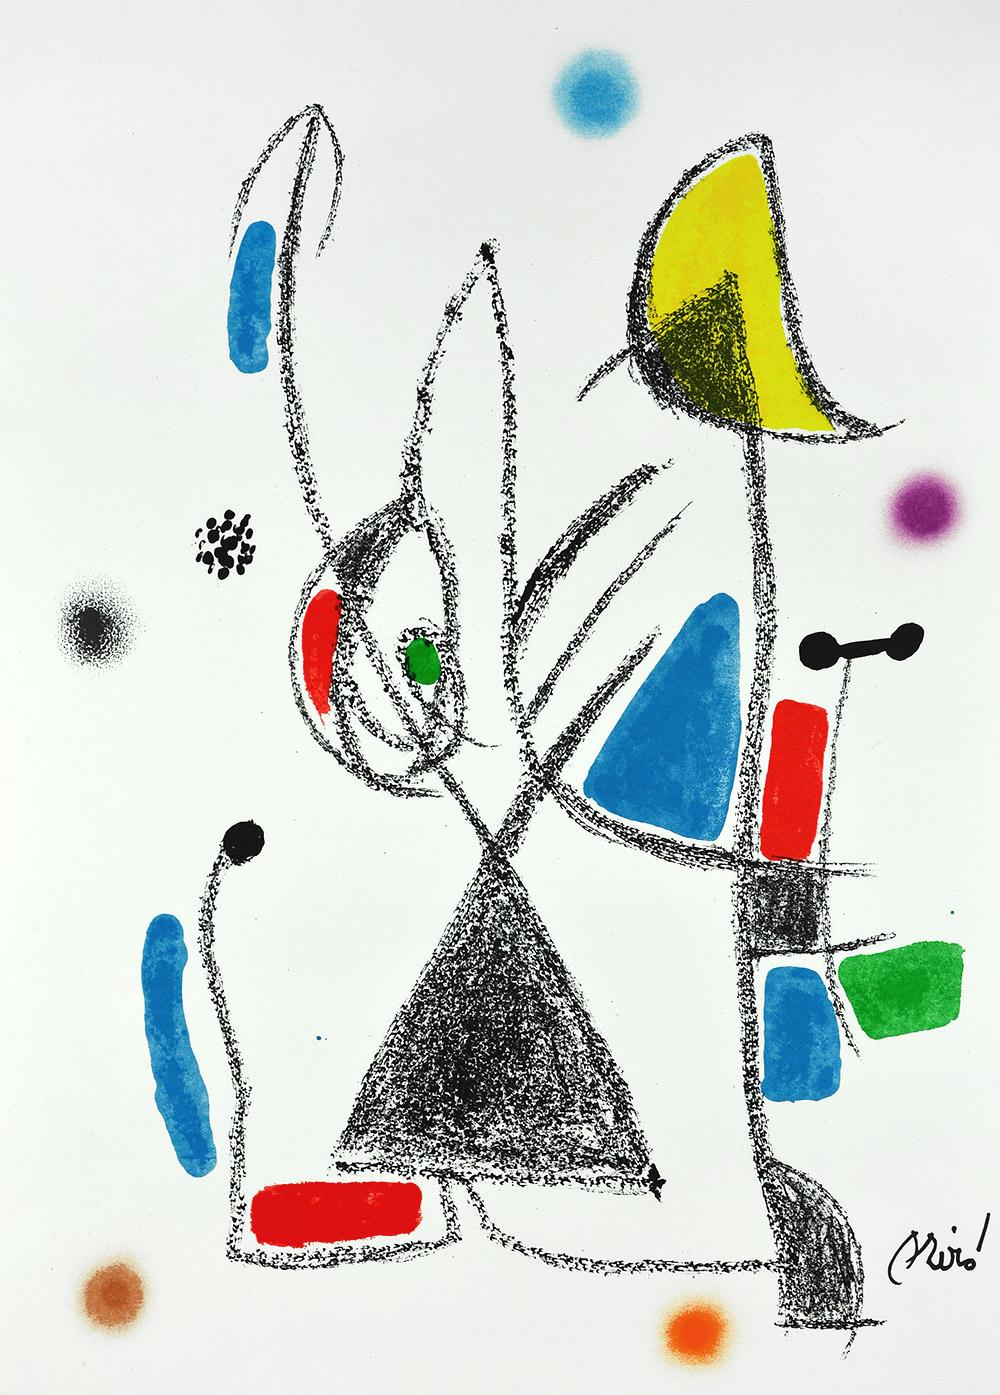 Joan Miró - Maravillas con variaciones acrósticas en el jardín de Miró XVI
Date de création : 1975
Support : Lithographie sur papier Gvarro
Édition : 1500
Taille : 49,5 x 35,5 cm
Condit : En très bon état et jamais encadré
Observations :